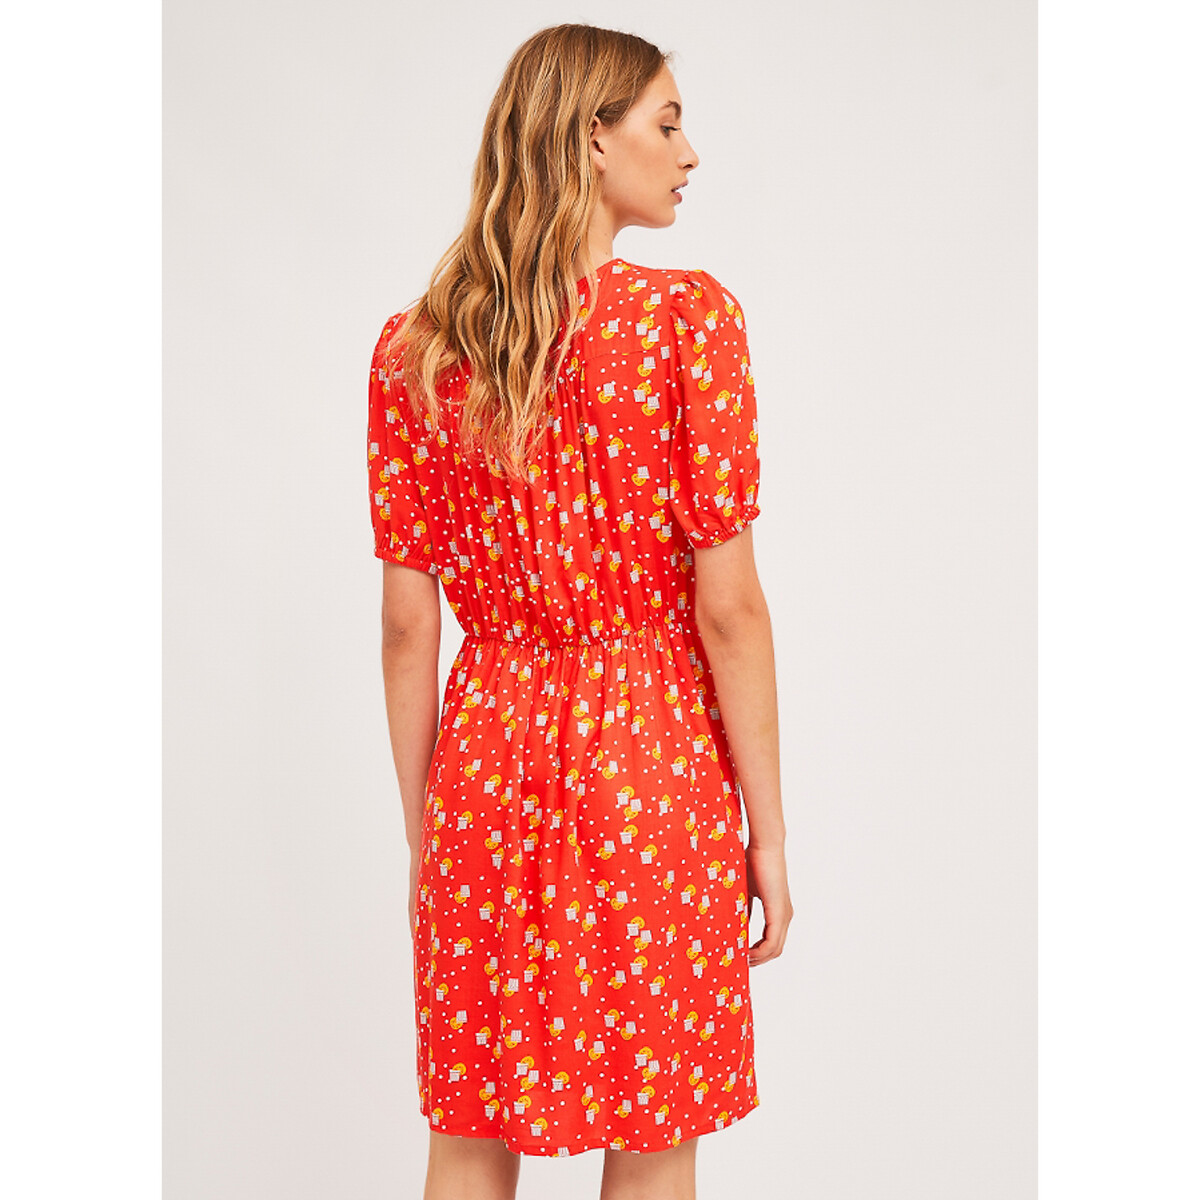 Платье LaRedoute Короткое с V-образным вырезом короткие рукава с принтом L красный, размер L - фото 2